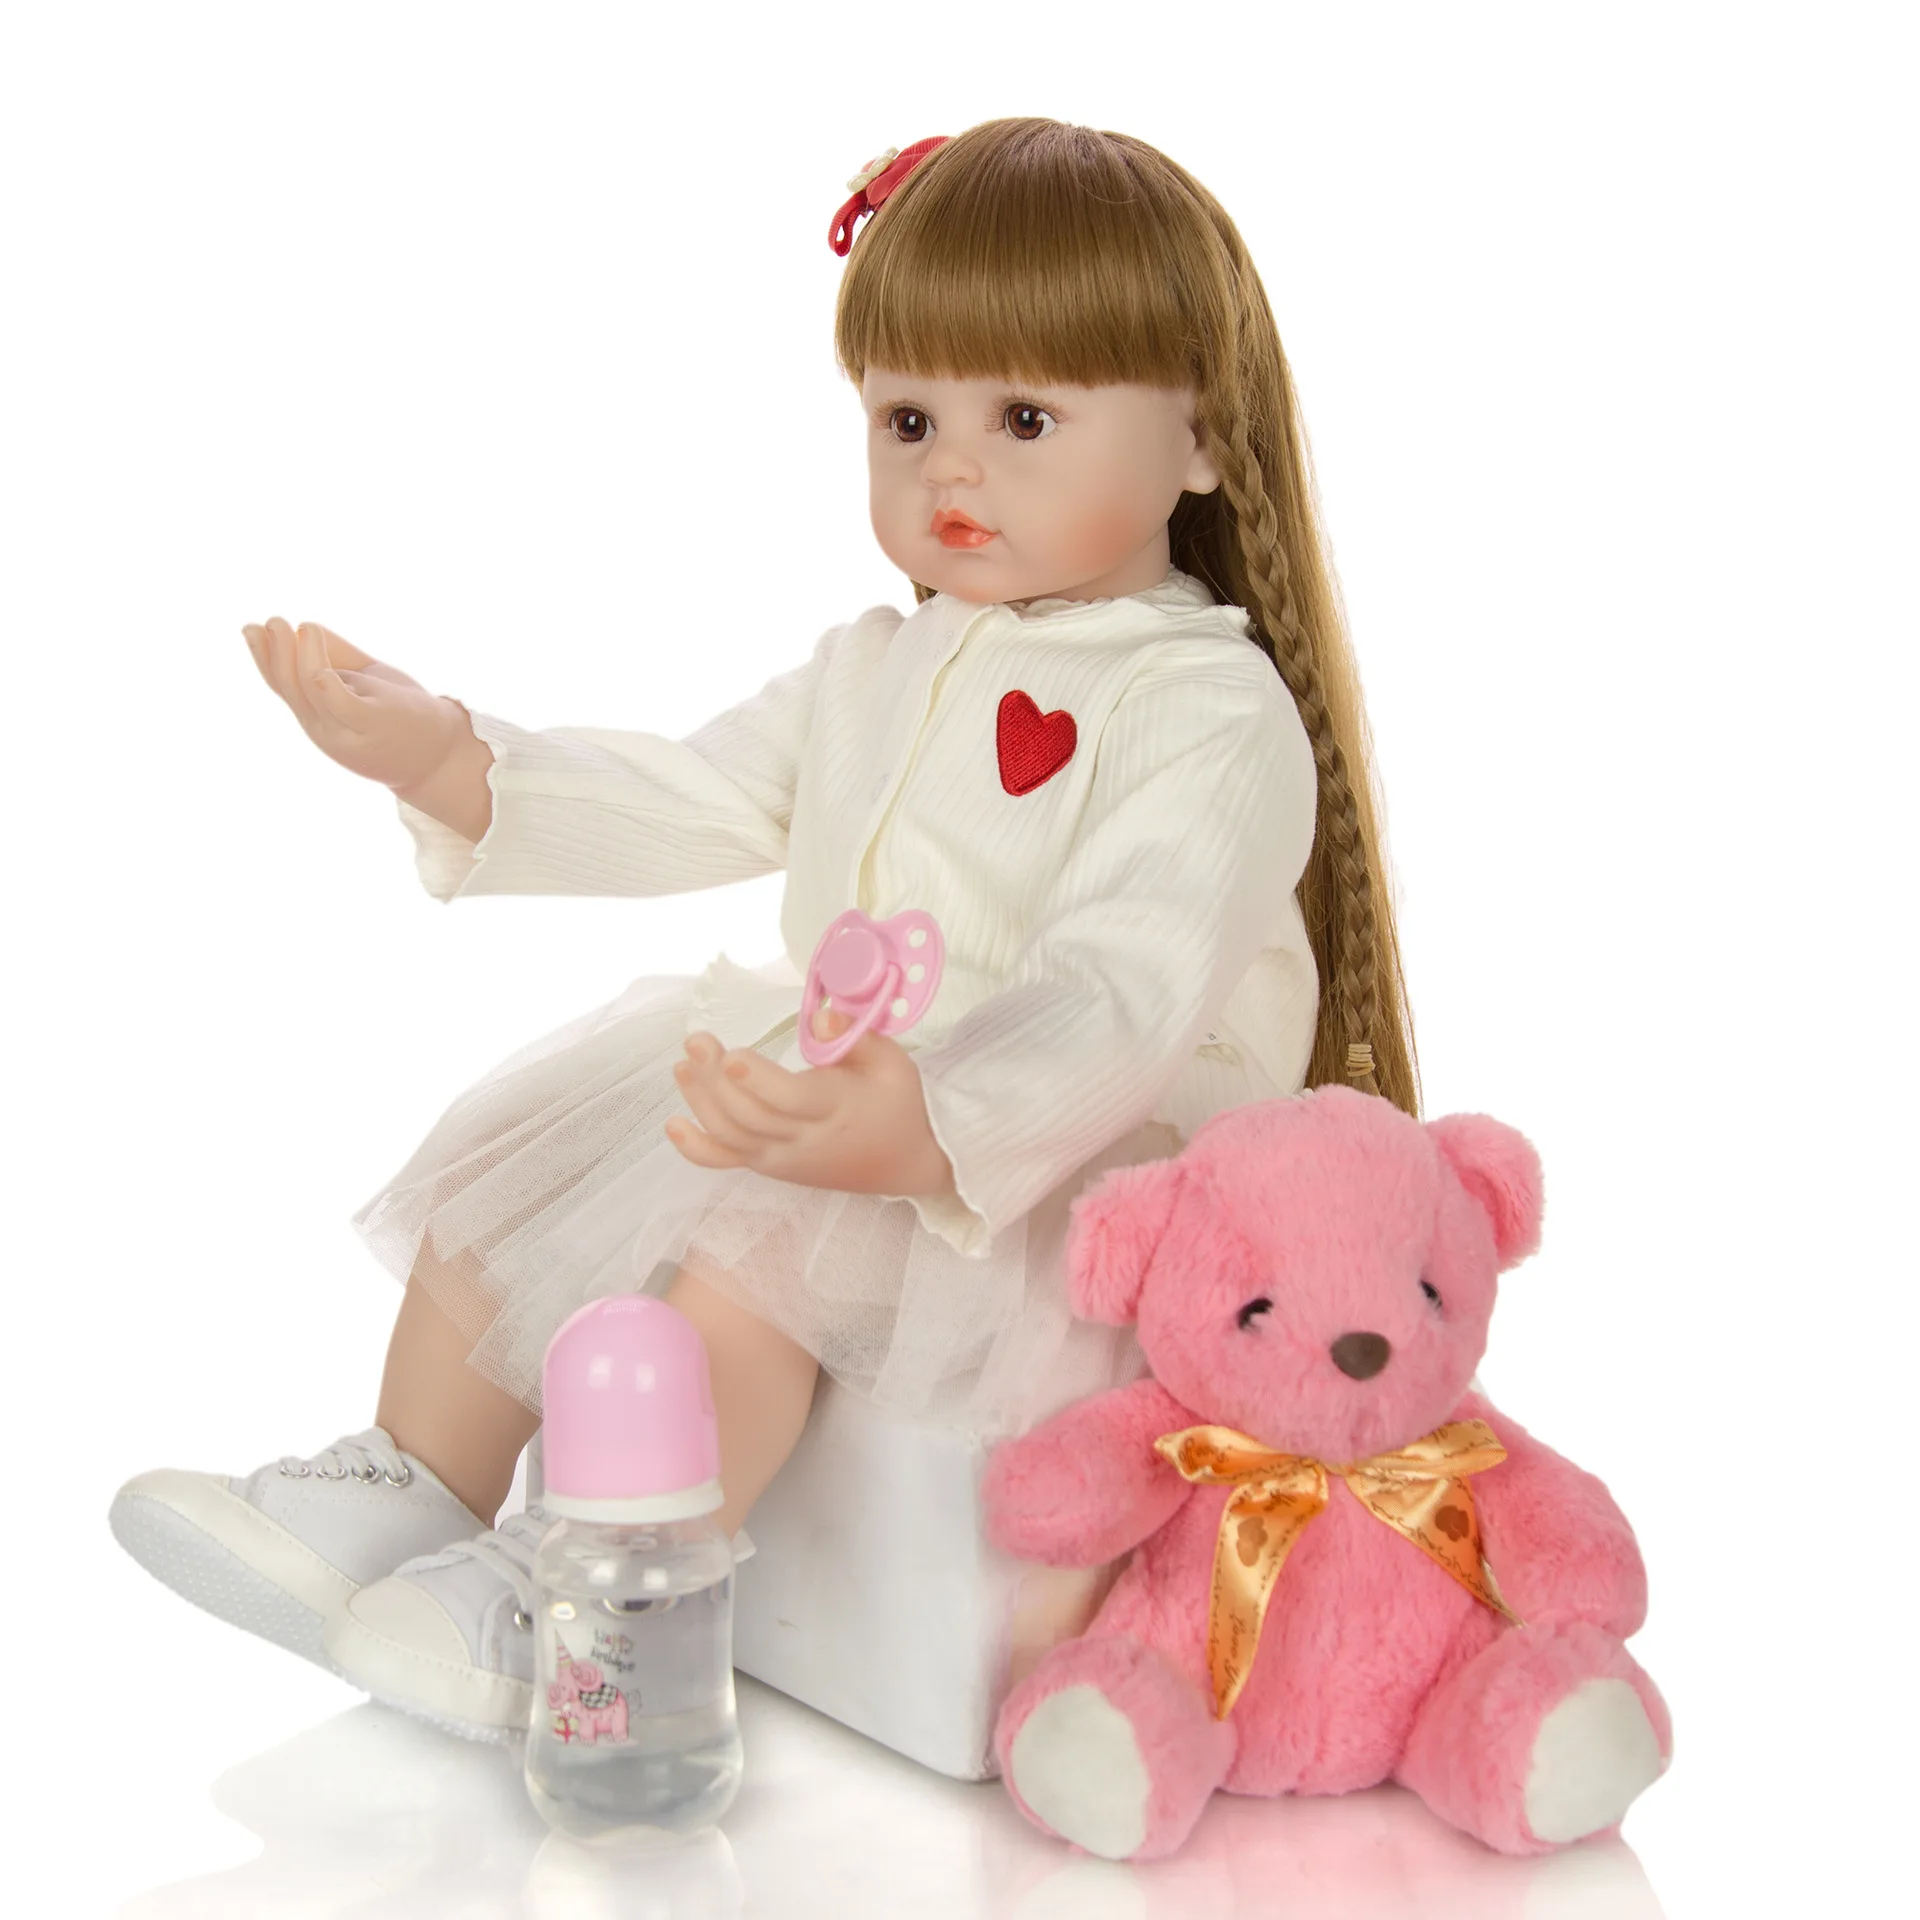 60 см Силиконовые Куклы Reborn Baby, Виниловые Куклы Reborn Baby С Длинными Волосами, Игрушки Для Девочек, Малышей, Мягкое Тело, Реалистичная Кукла Ручной Работы Для Малыша